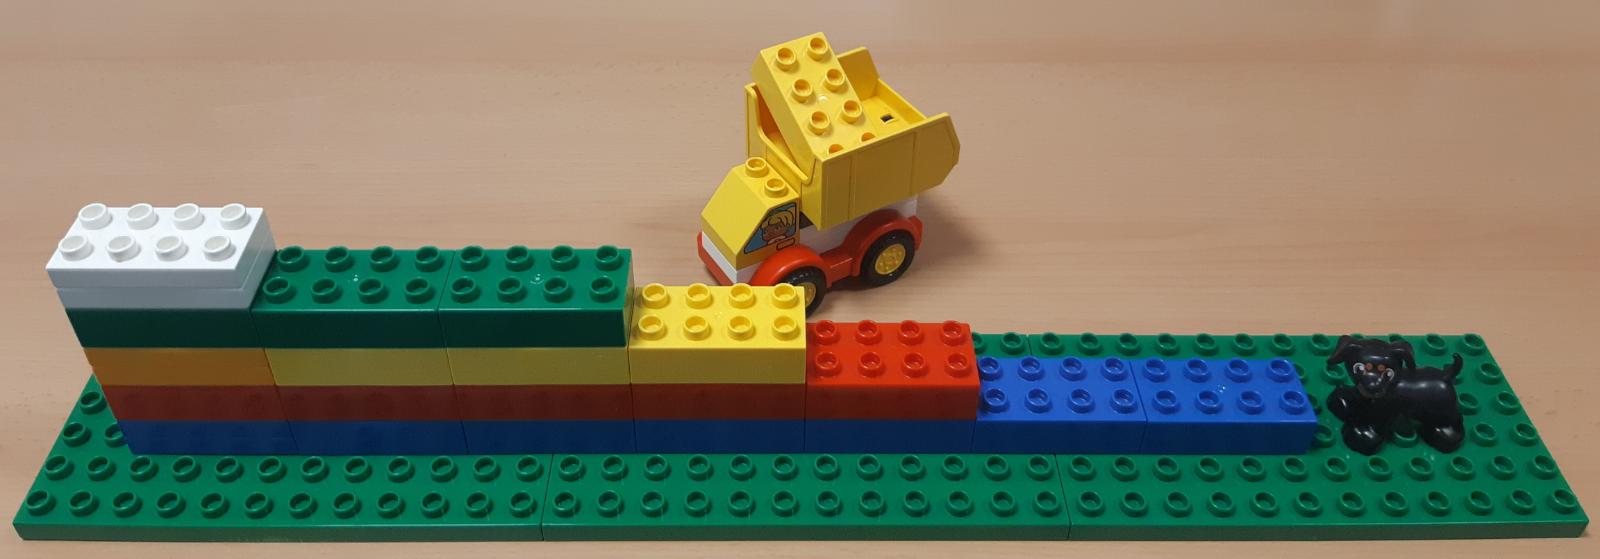 Escalera hecha con fichas de lego